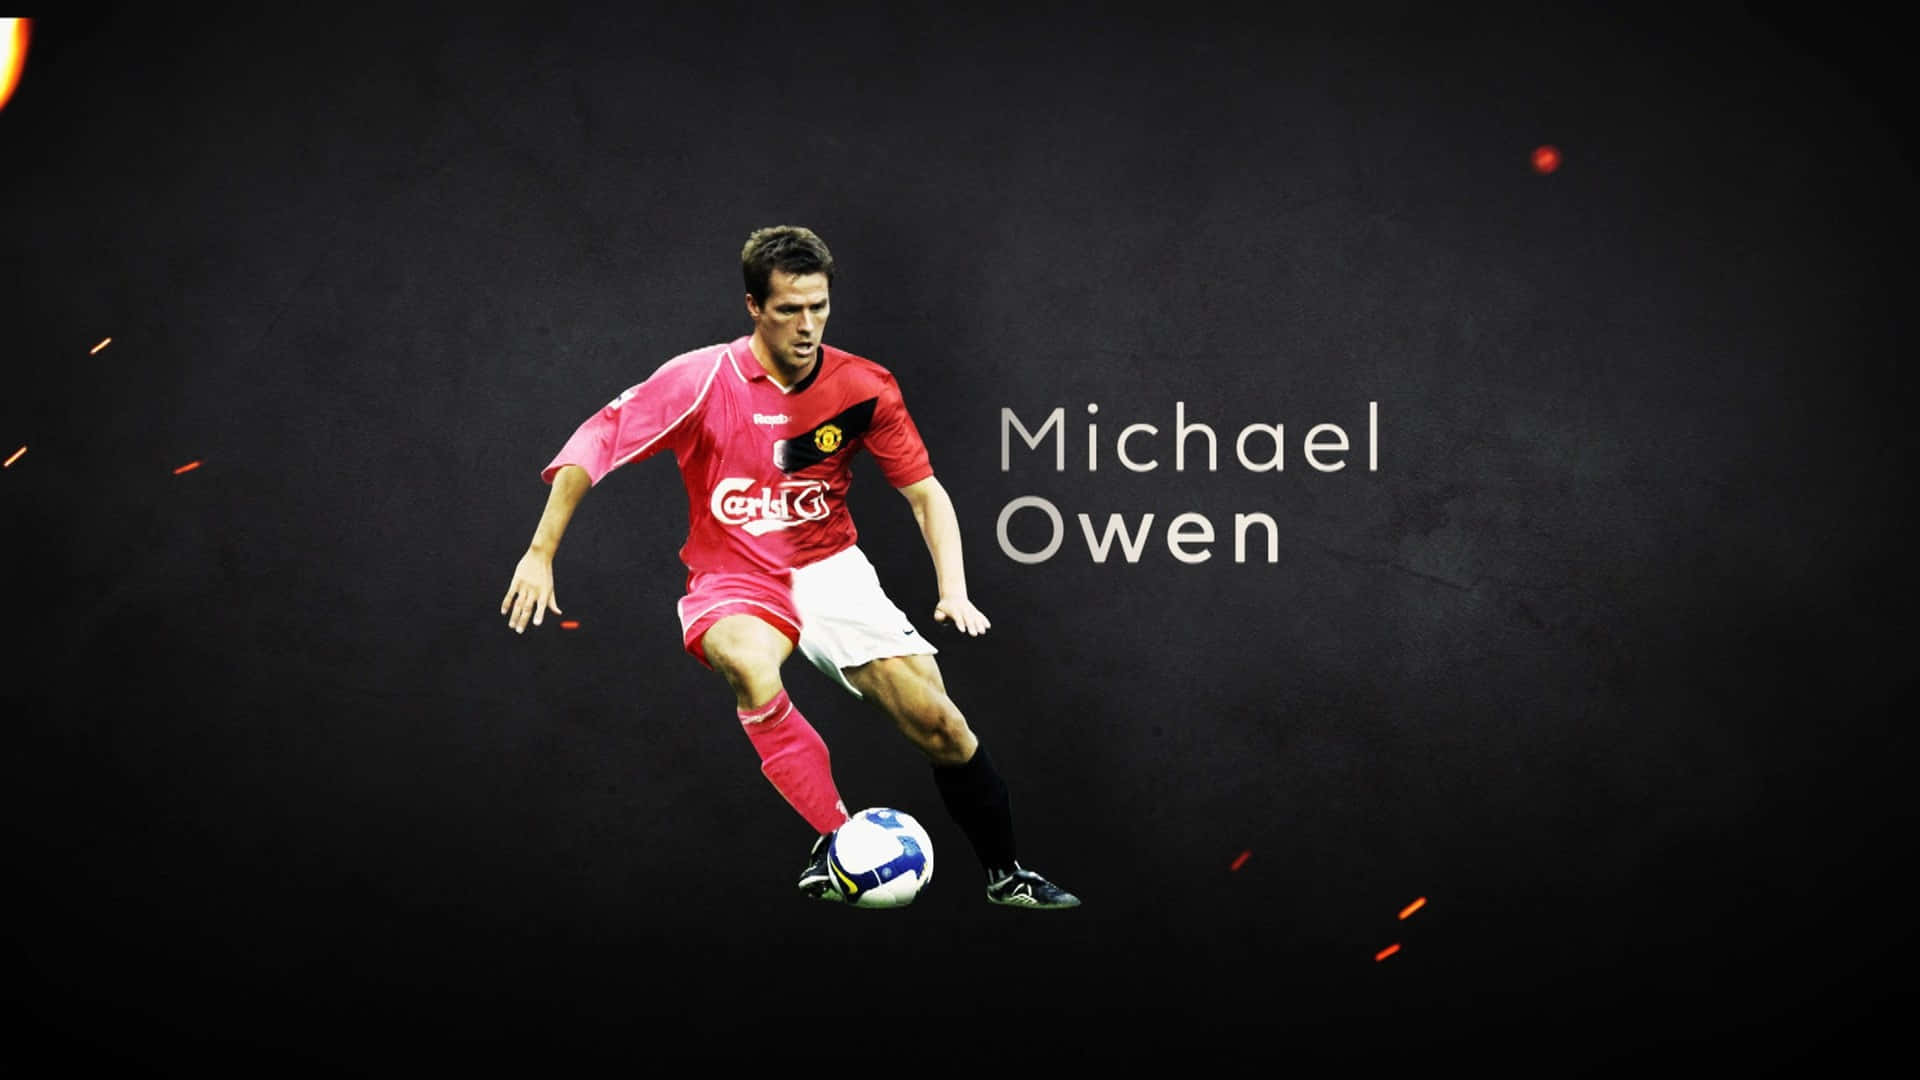 Fodboldspiller Michael Owen poster Wallpaper